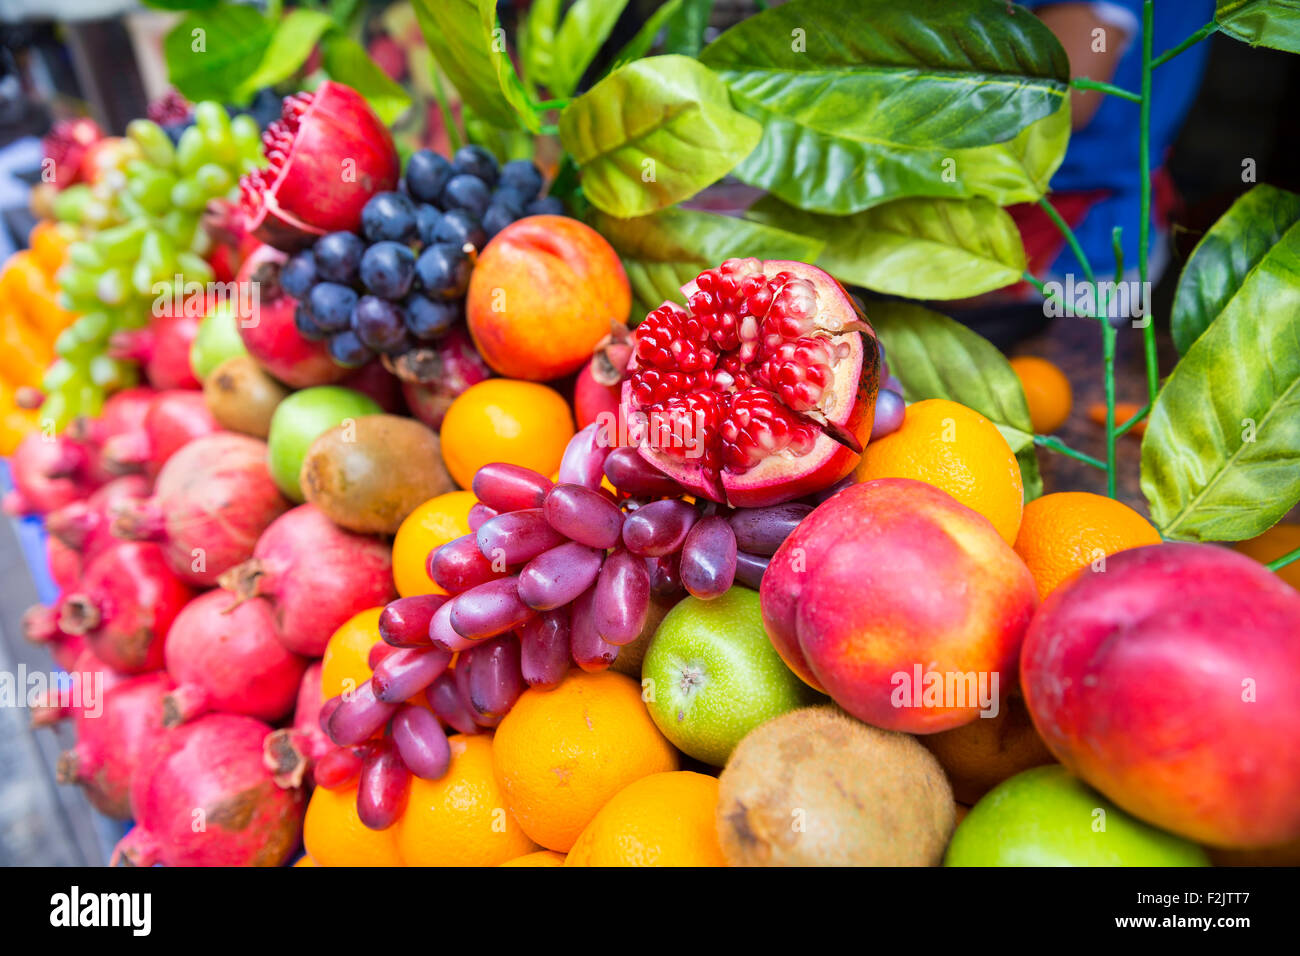 Molti tipi diversi di frutta in una vetrina. Venditore ambulante vendendo colorati frutti esotici e succo di frutta. Foto Stock